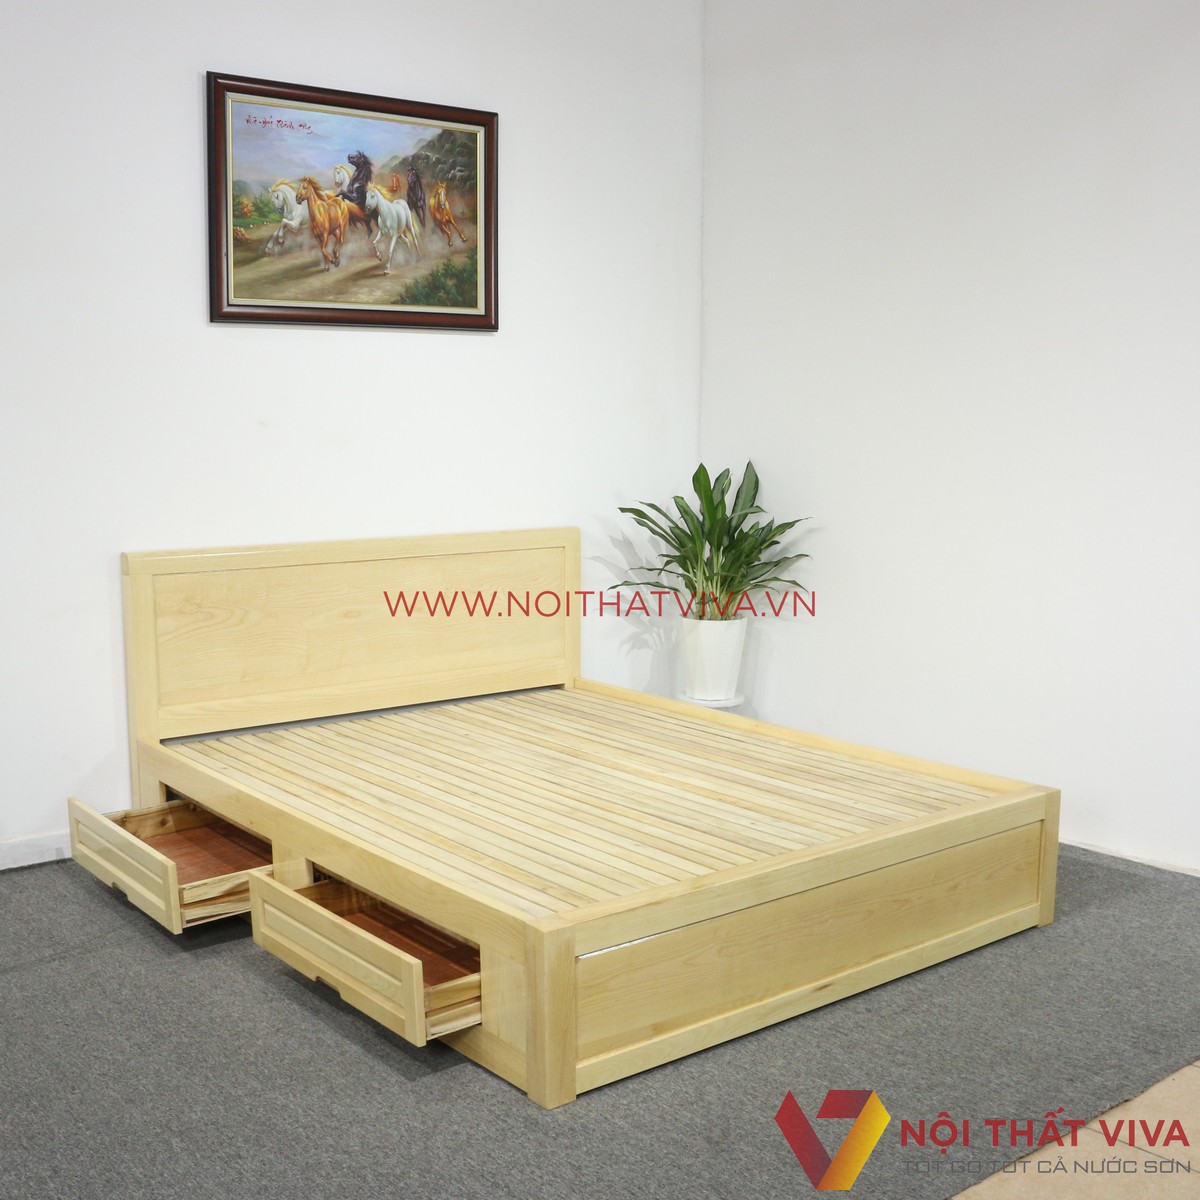 Tư vấn từ chuyên gia: Các mẫu giường ngủ gỗ sồi trắng hiện đại đẹp nhất xứng đáng để lựa chọn